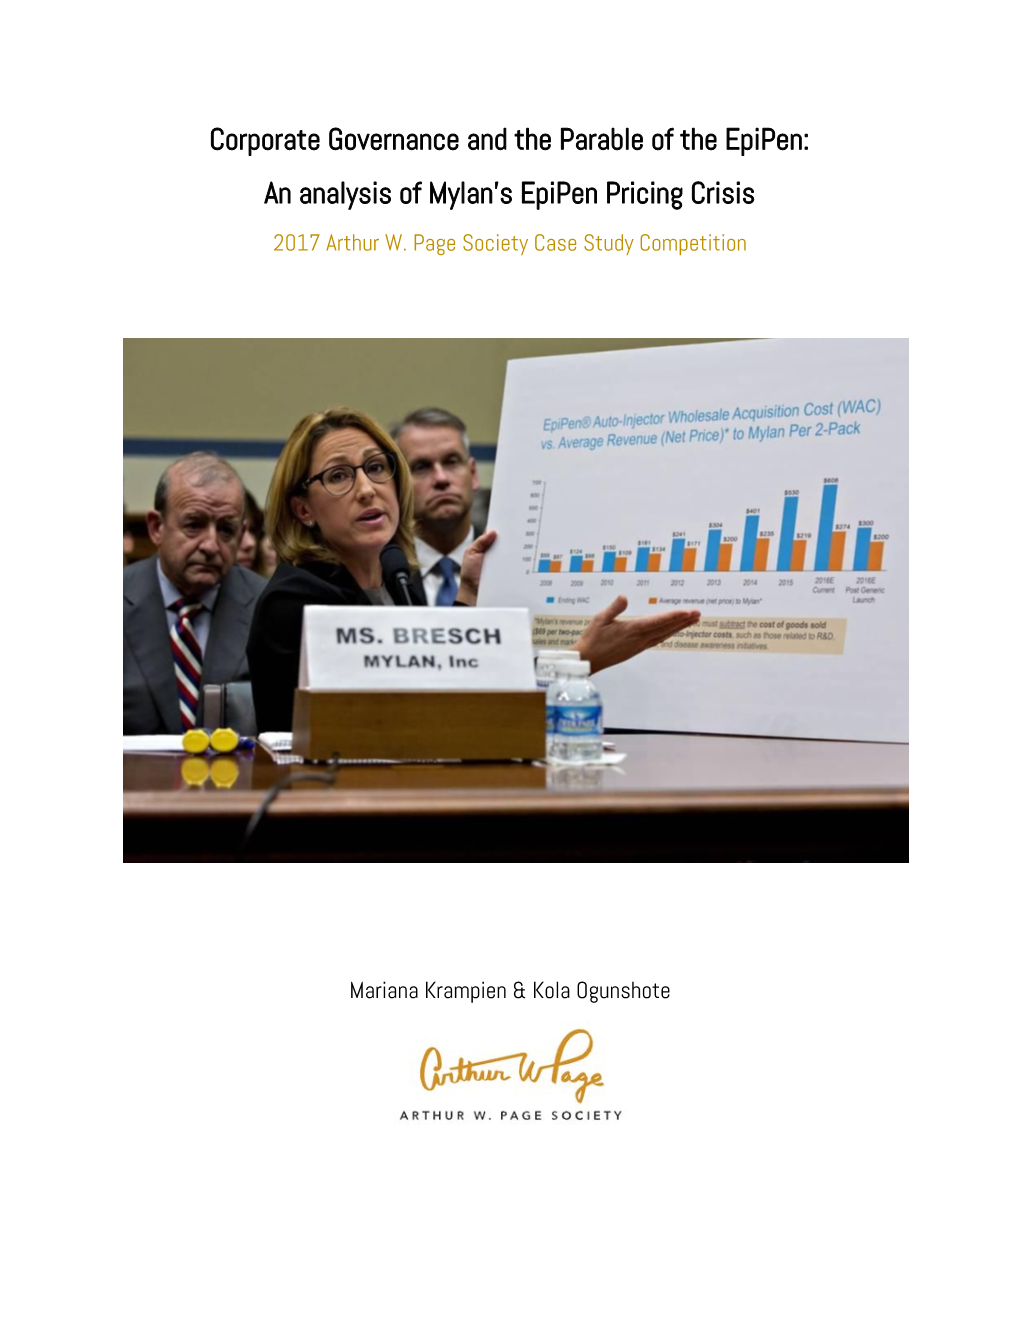 An Analysis of Mylan's Epipen Pricing Crisis